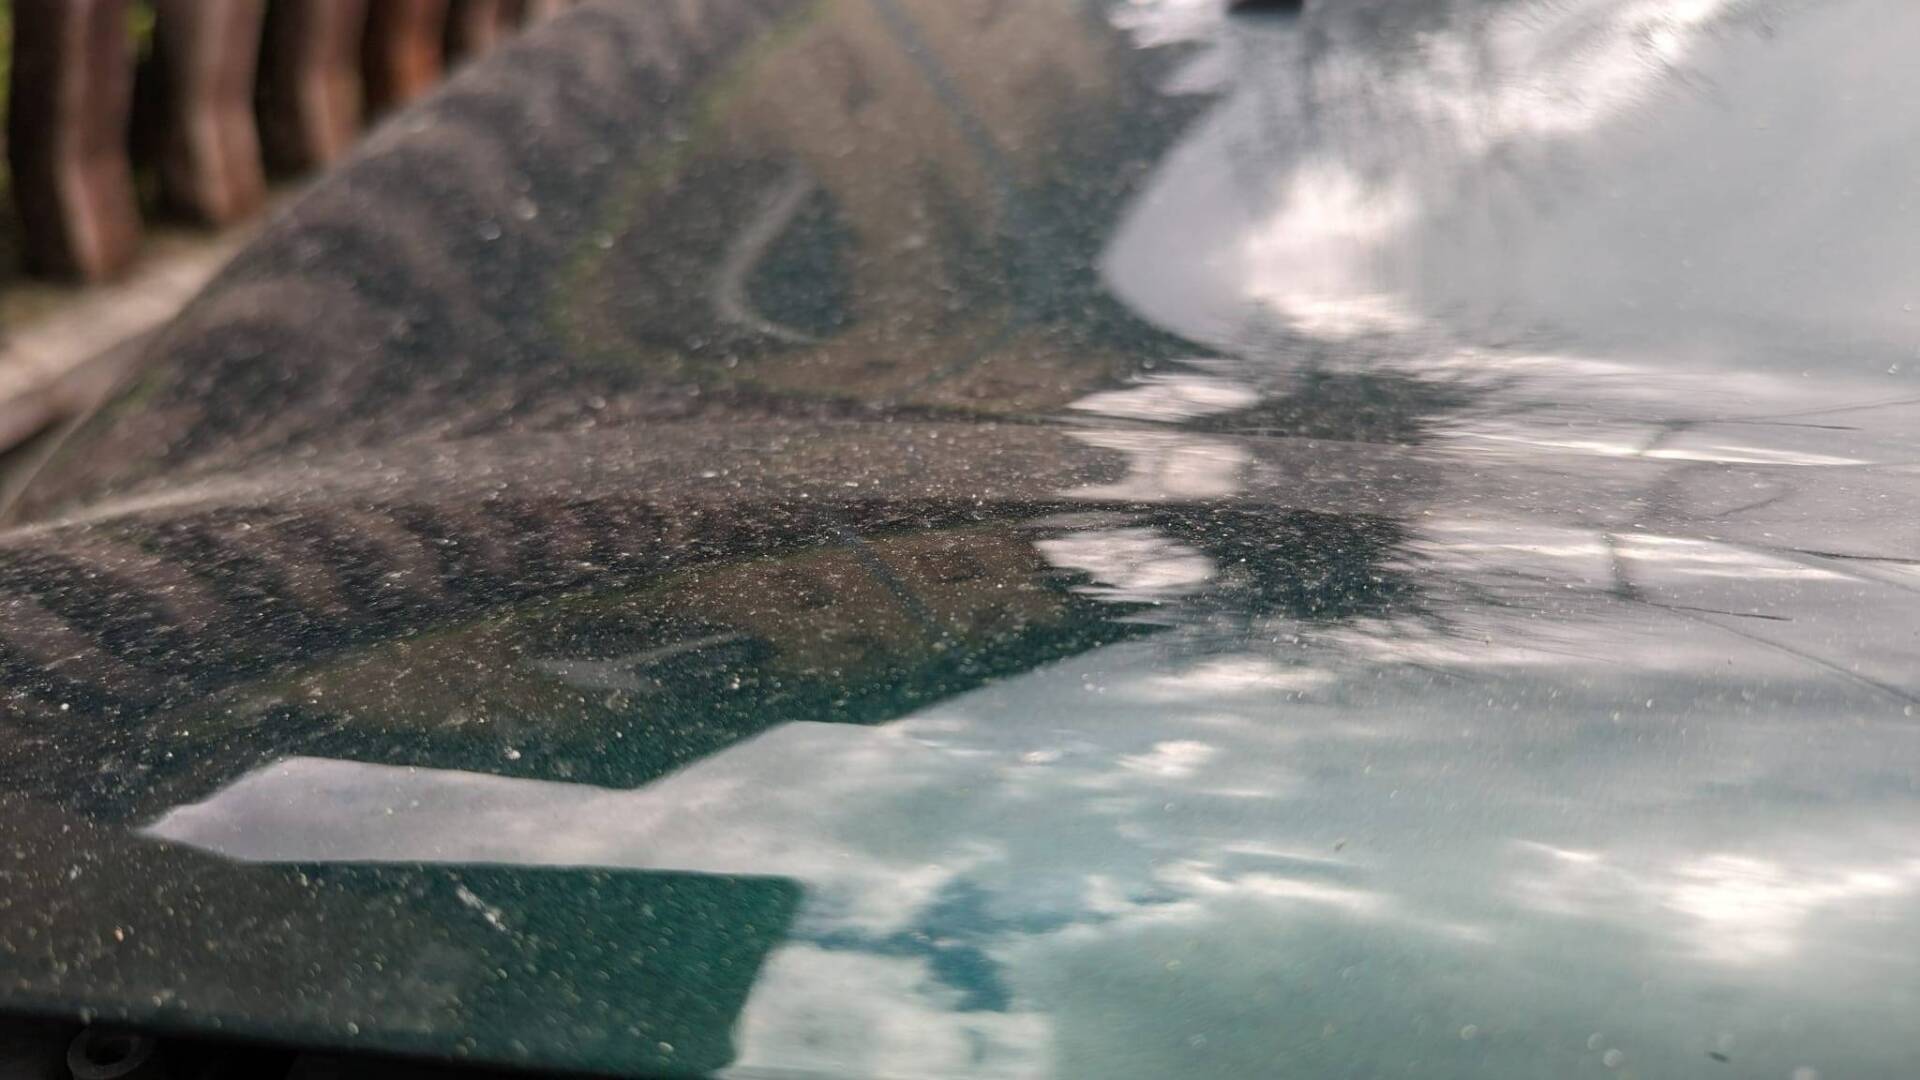 Sabbia sulle auto, sui vetri e su balconi dopo la pioggia: ecco cos’è successo